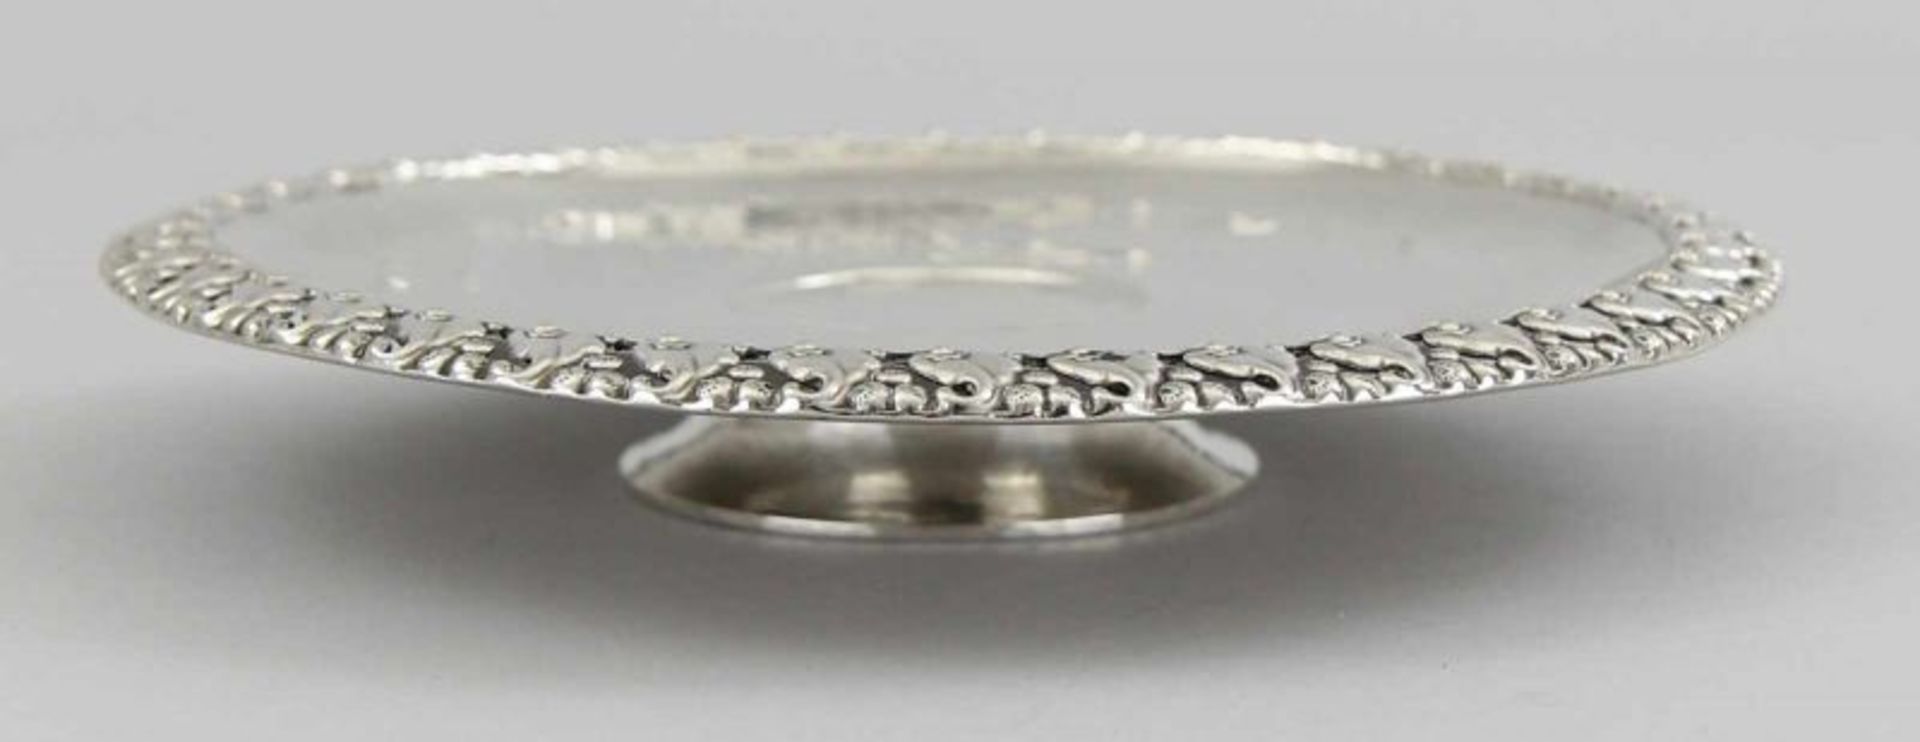 Tazza Silber 800 getrieben und geprägt, flache Schale mit durchbrochen gearbeitetem Rand auf - Image 2 of 3